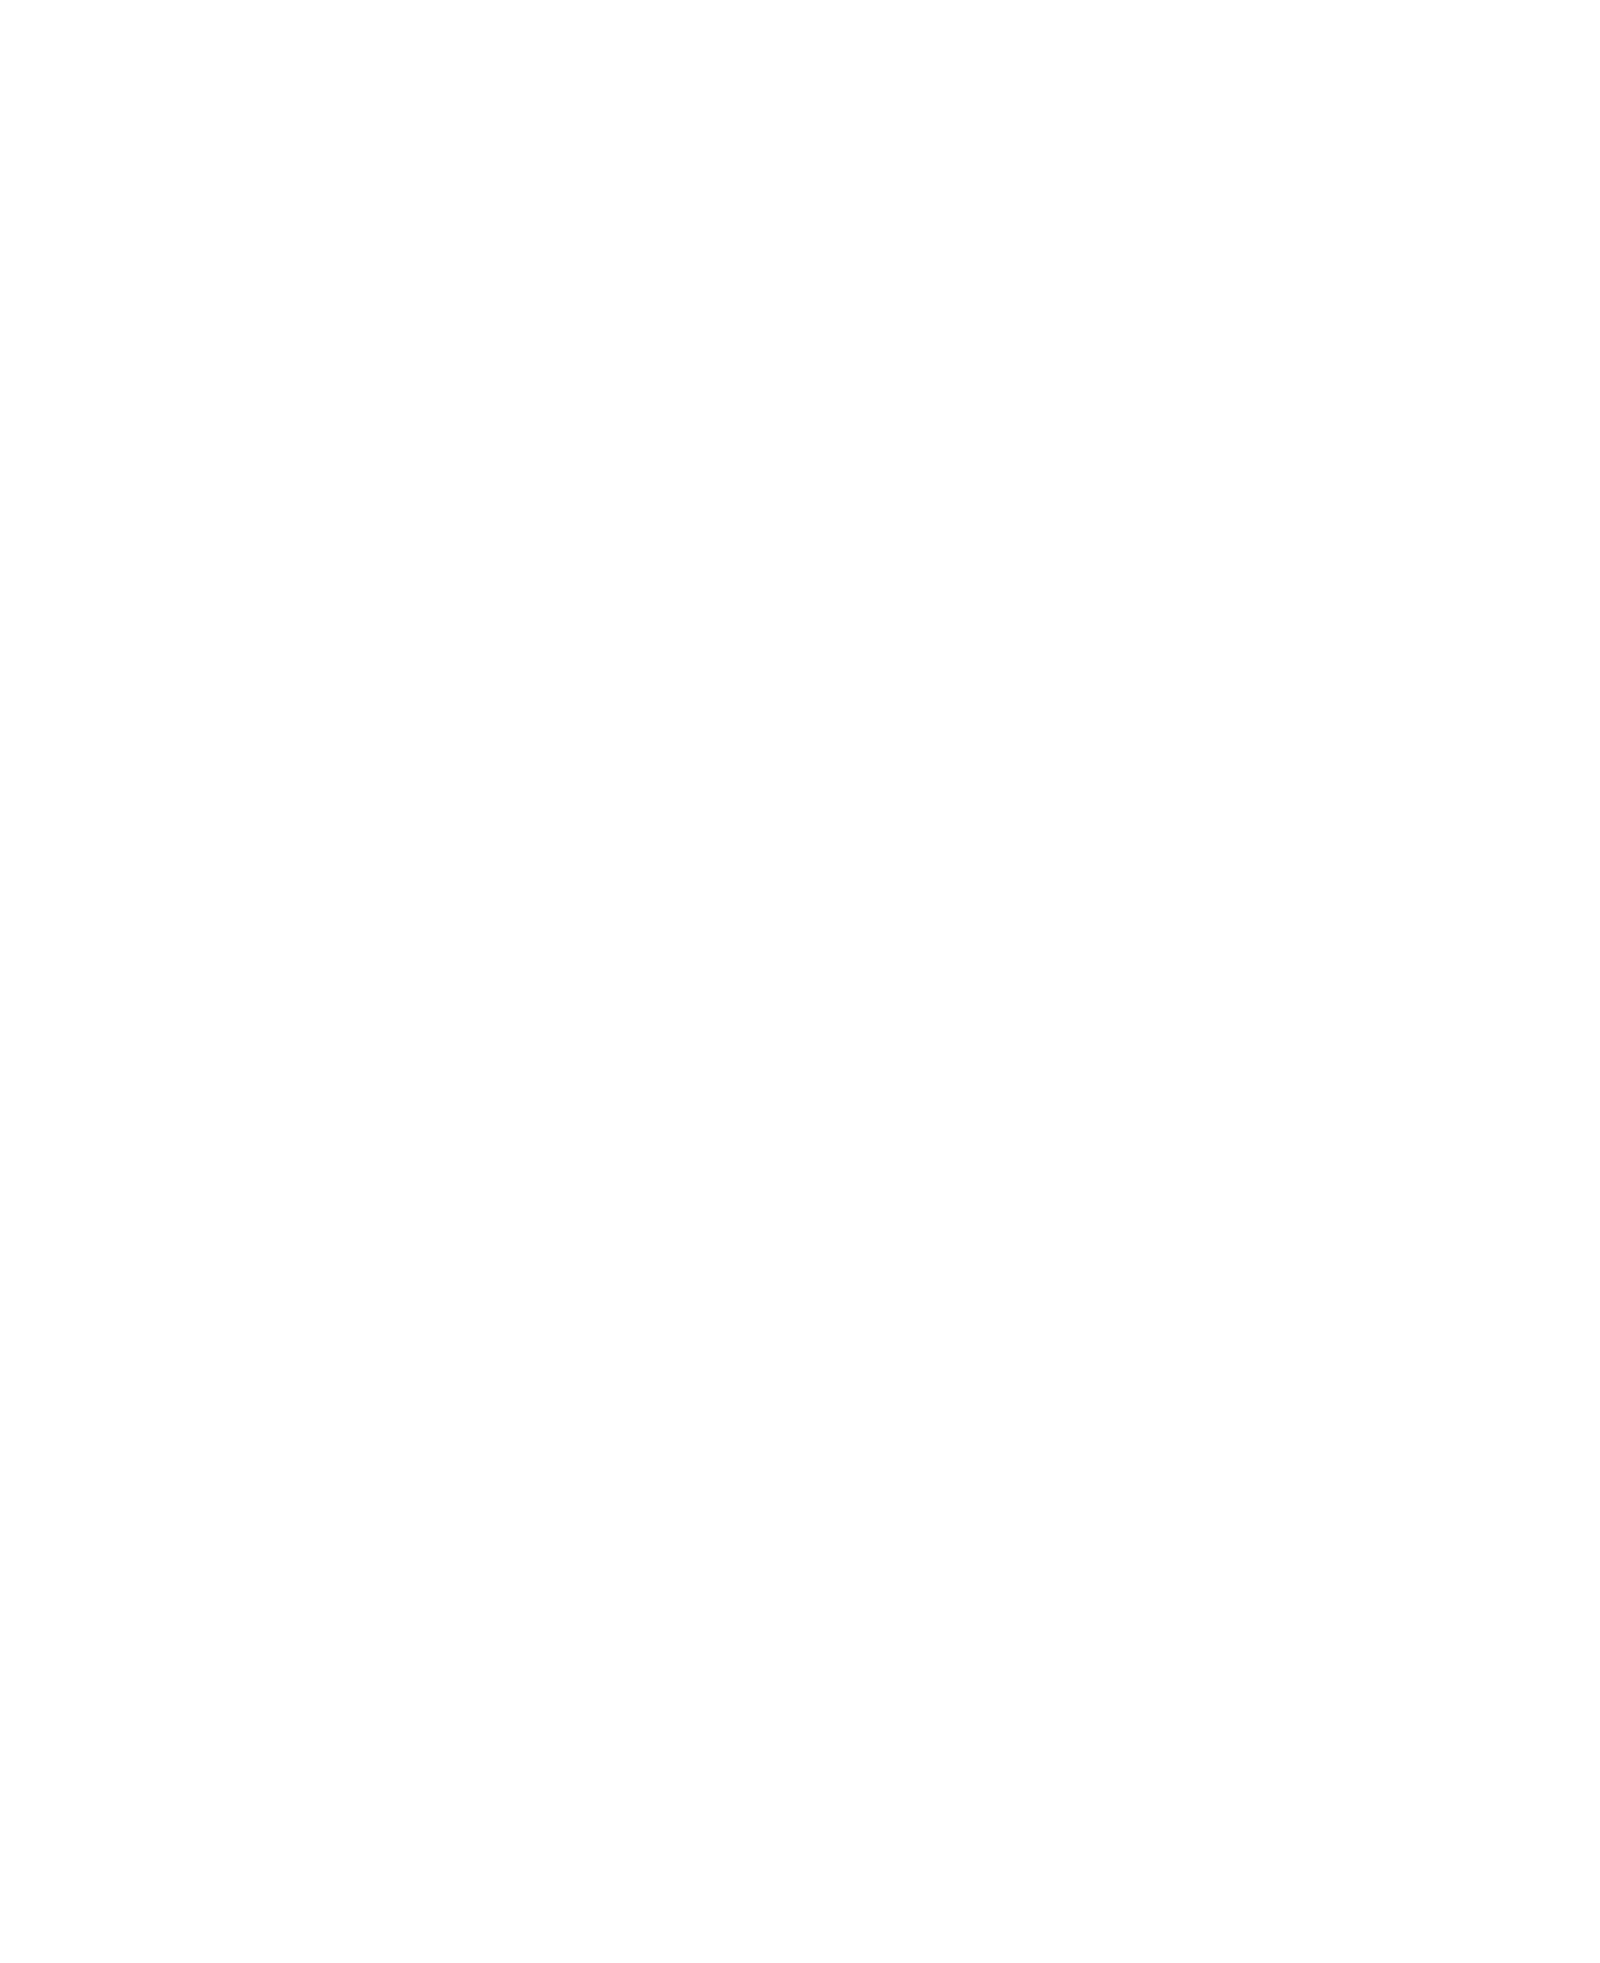 logotipo Hidalgo Crece Contigo